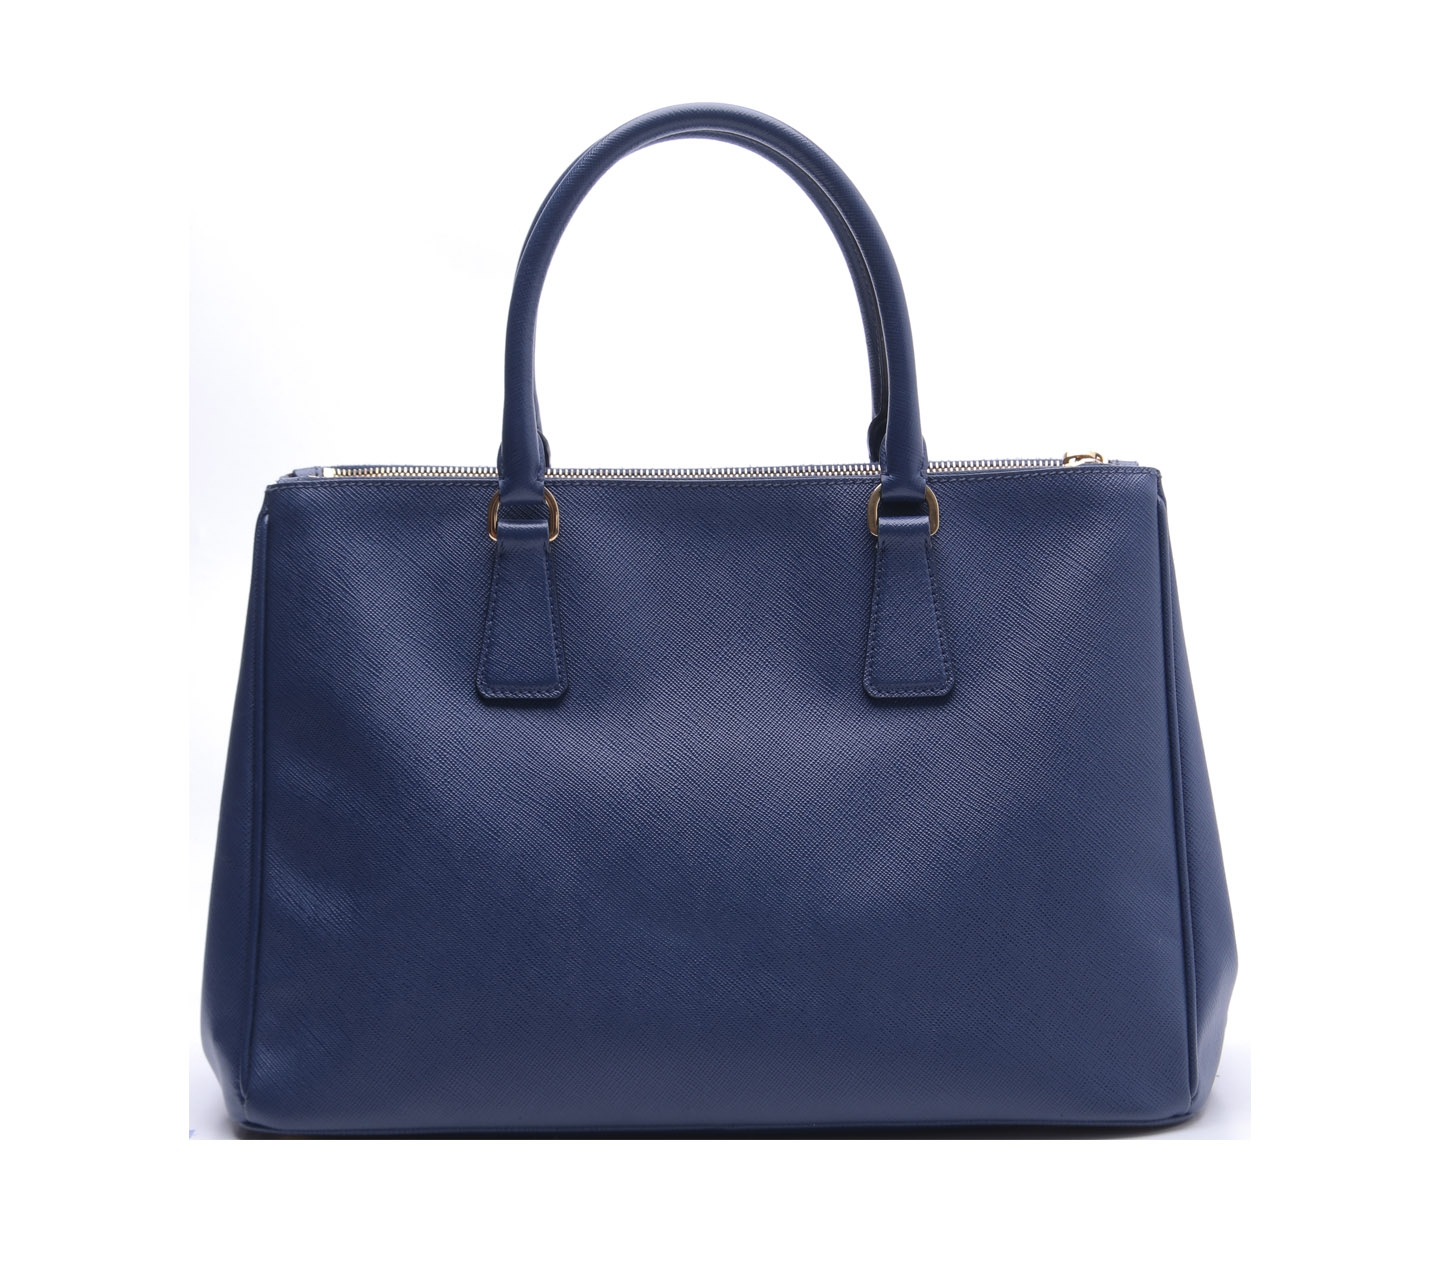 Prada Saffiano Lux Blue Satchel Bag